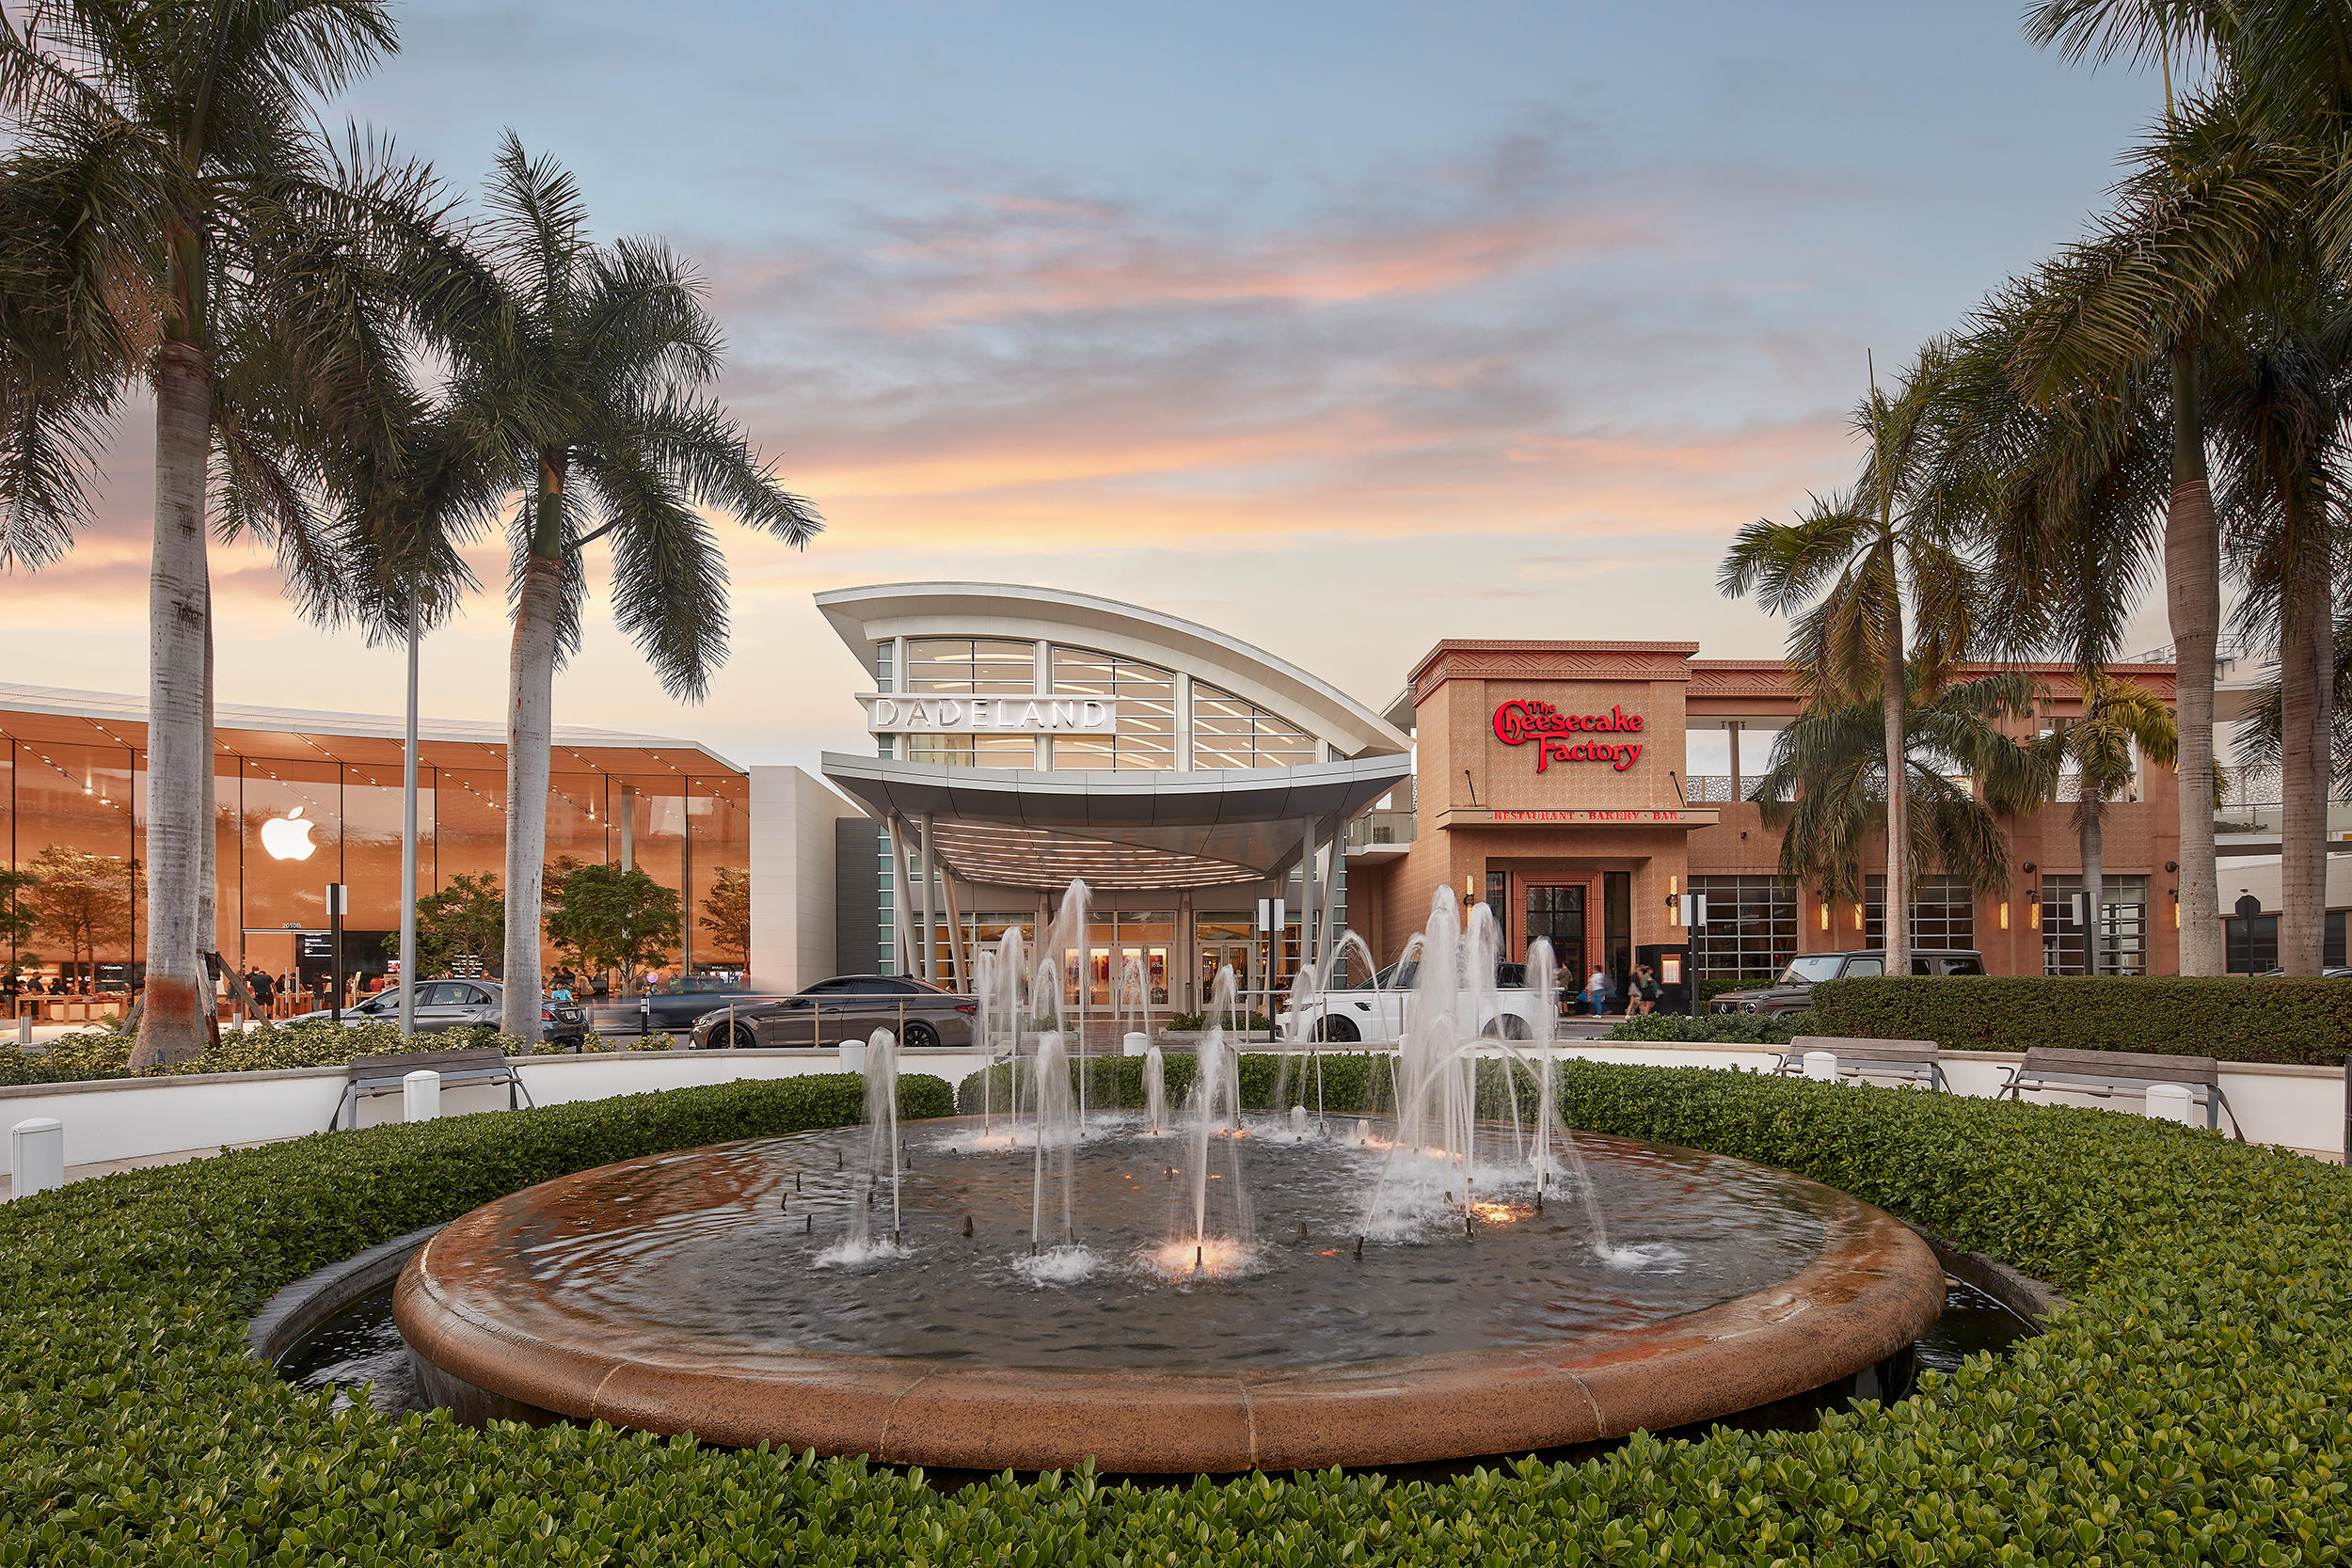 Dadeland Mall Miami (305)665-6226